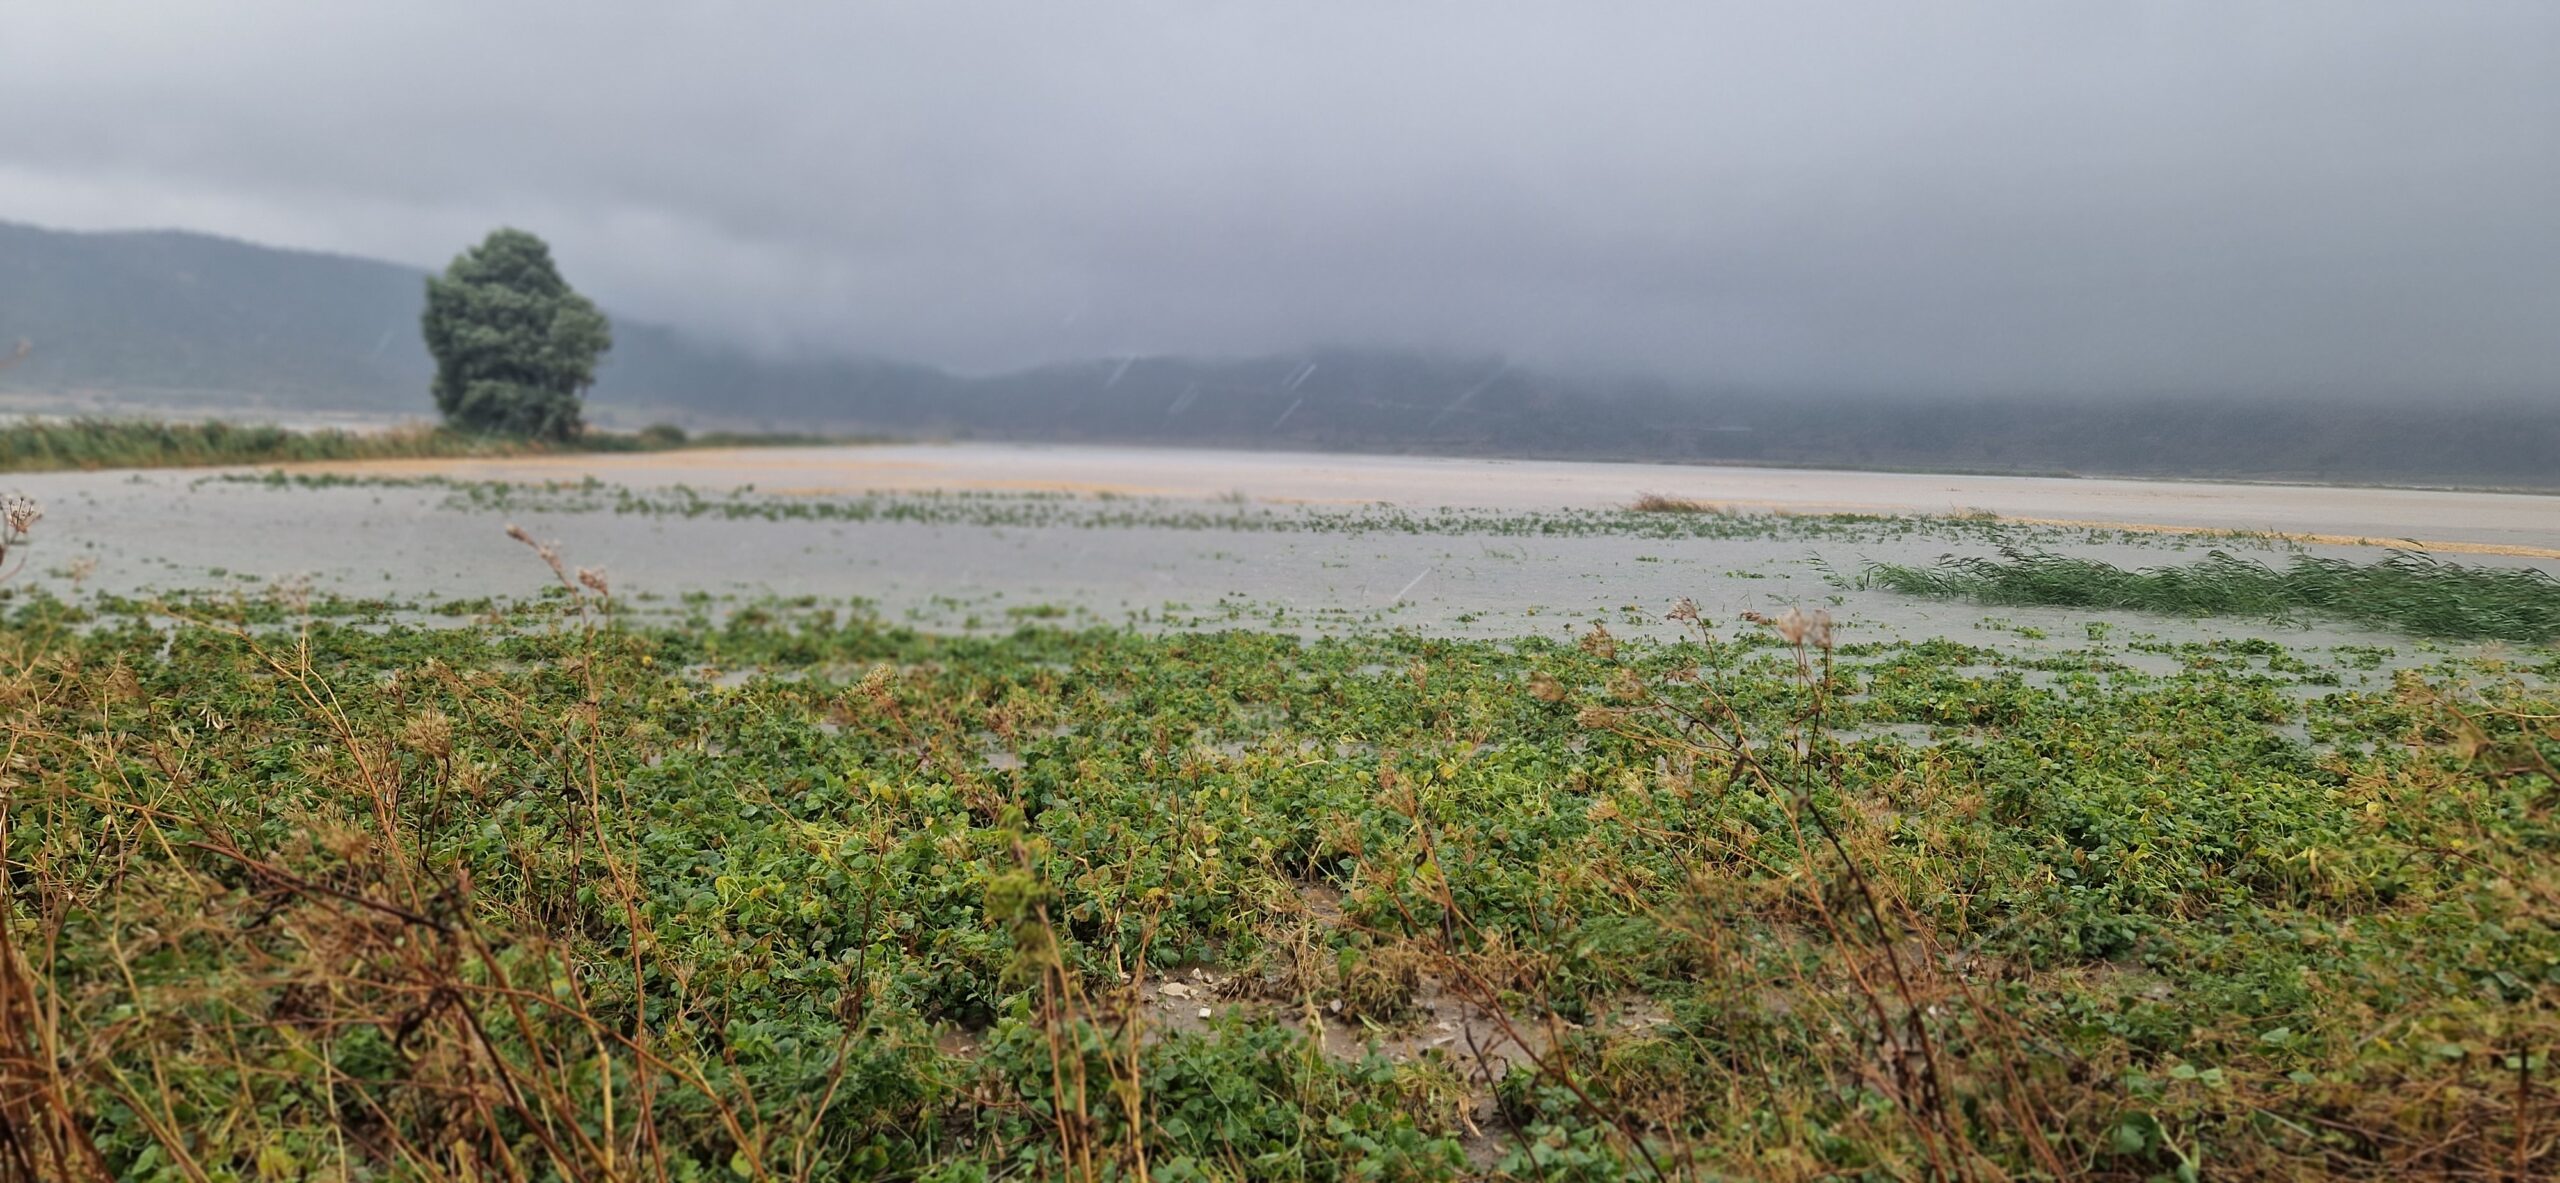 Κακοκαιρία Daniel: Χιλιάδες στρέμματα καλλιεργειών βούλιαξαν στο νερό στα Τέμπη